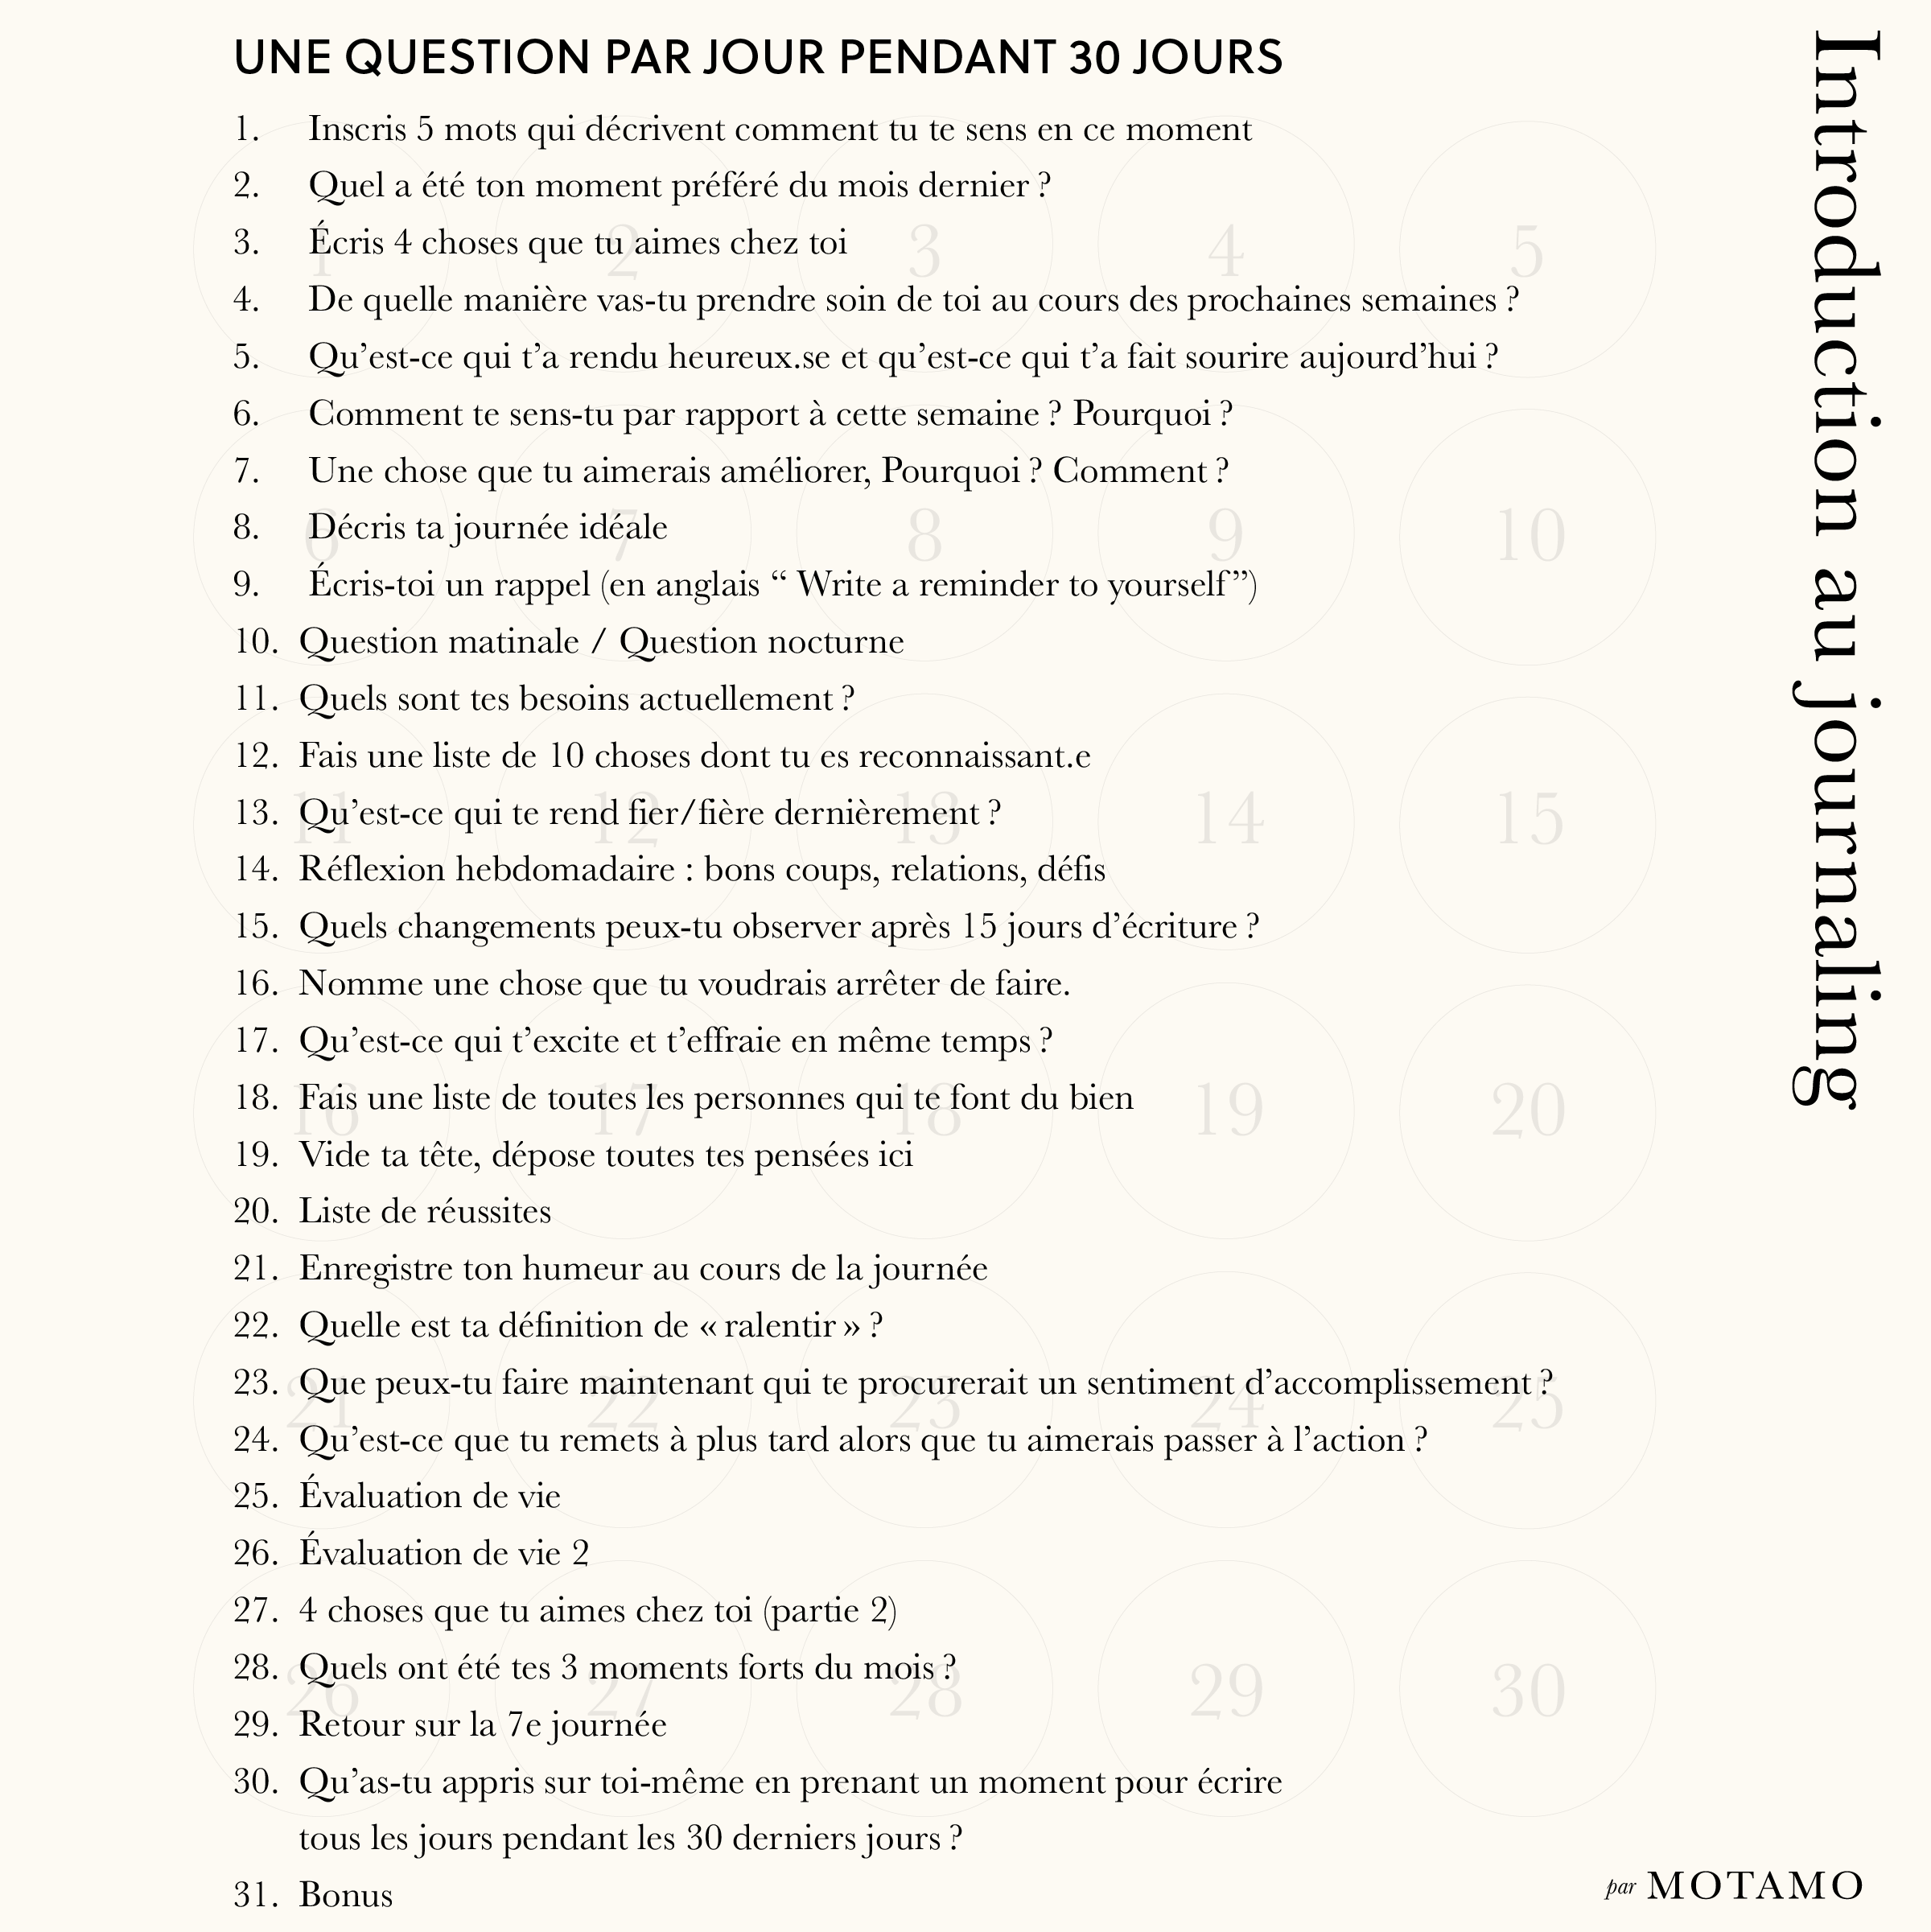 Introduction au Journaling - Une question par jour pendant 30 jours (Burgundy)